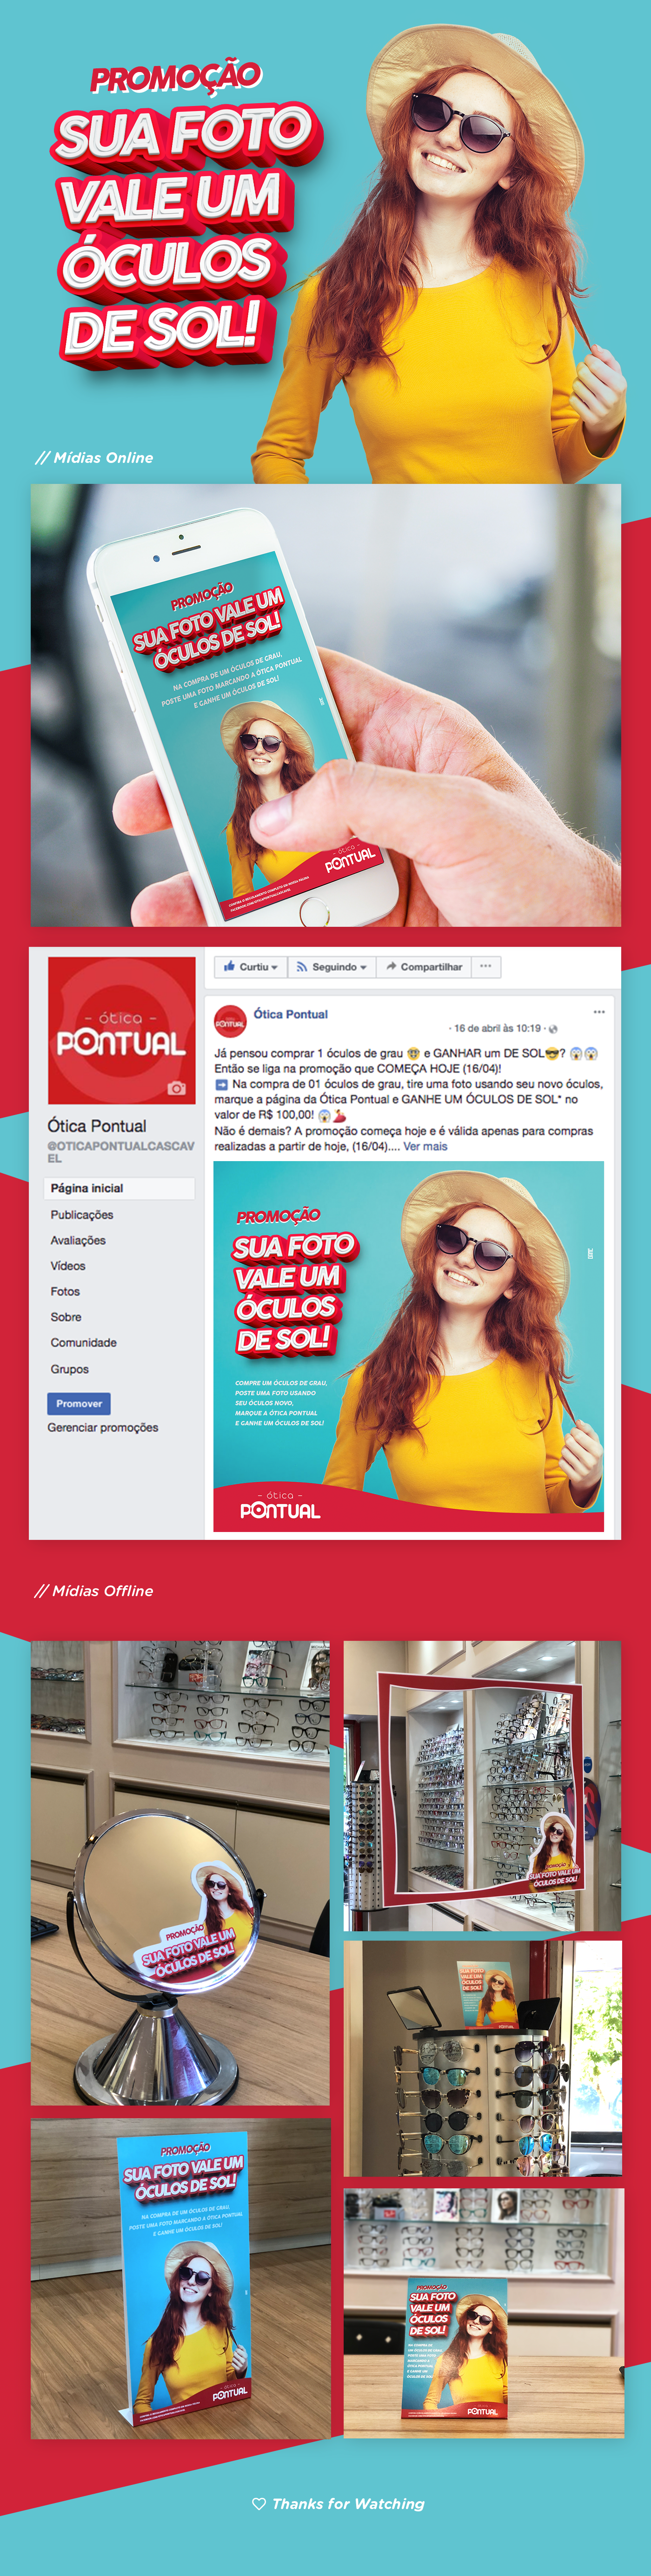 optics OTICA Promotion Promoção eyeglass sunglass óculos social media mídias sociais